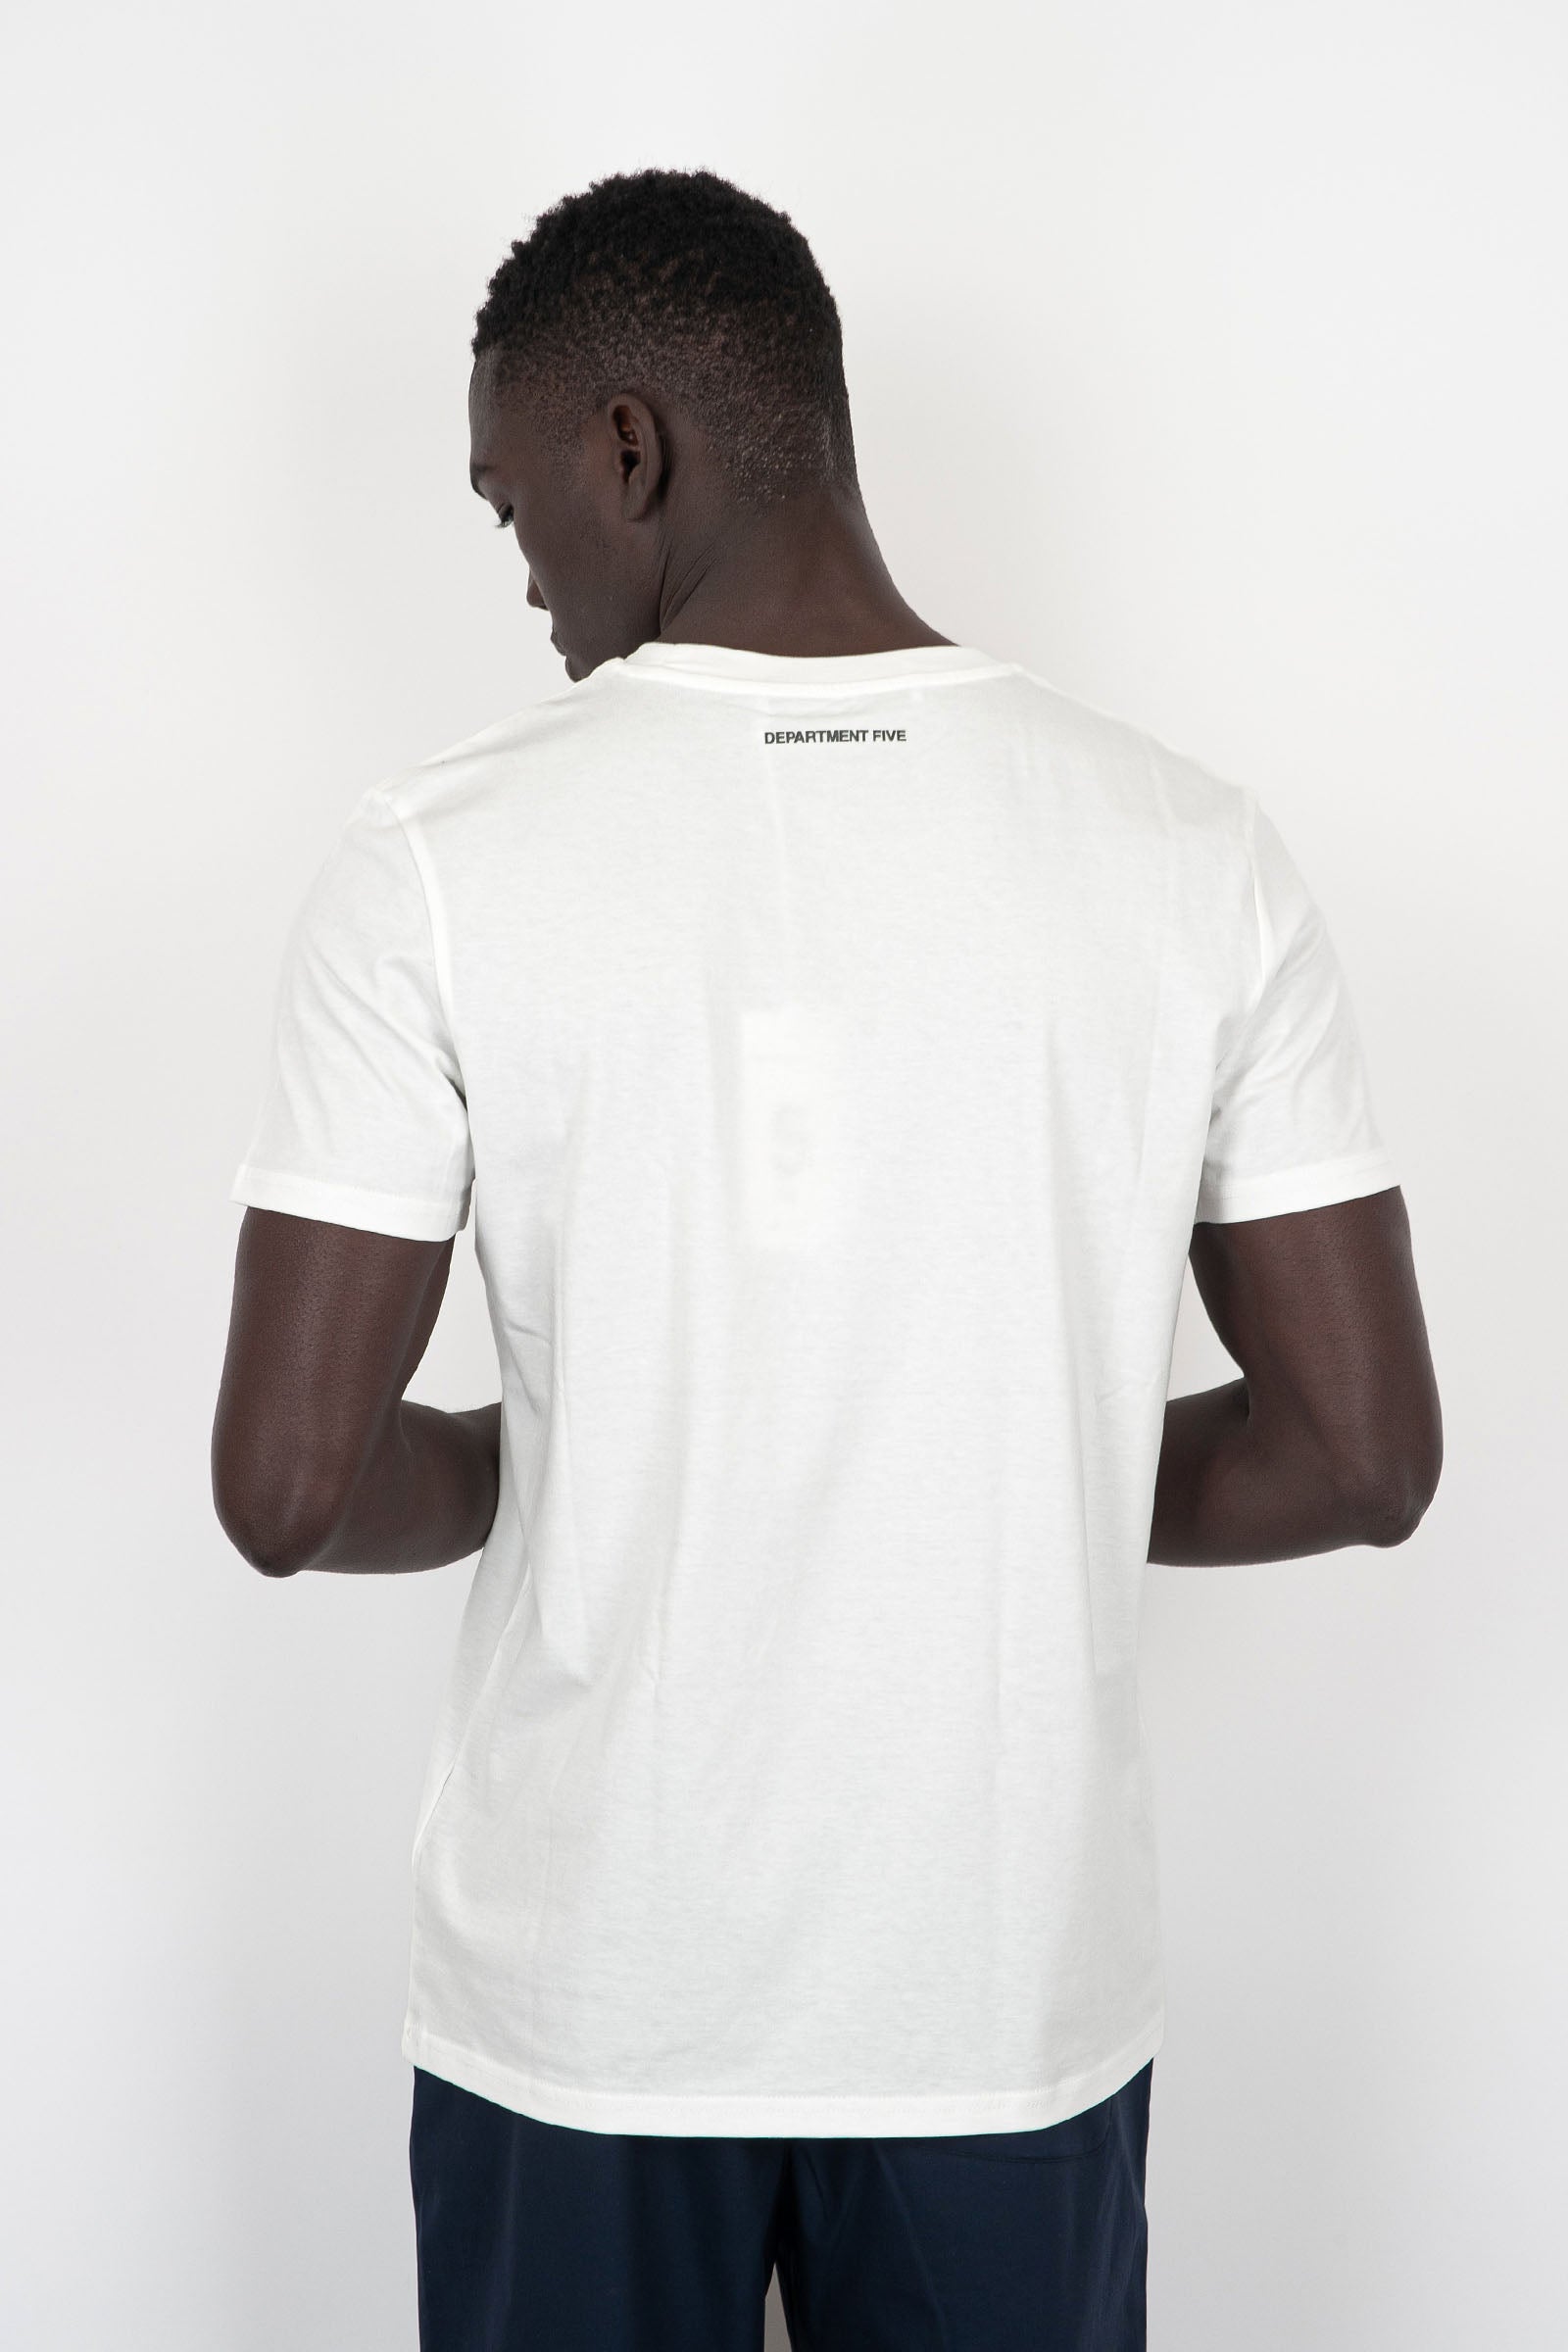 Department Five Cesar Cotton White T-Shirt - 4